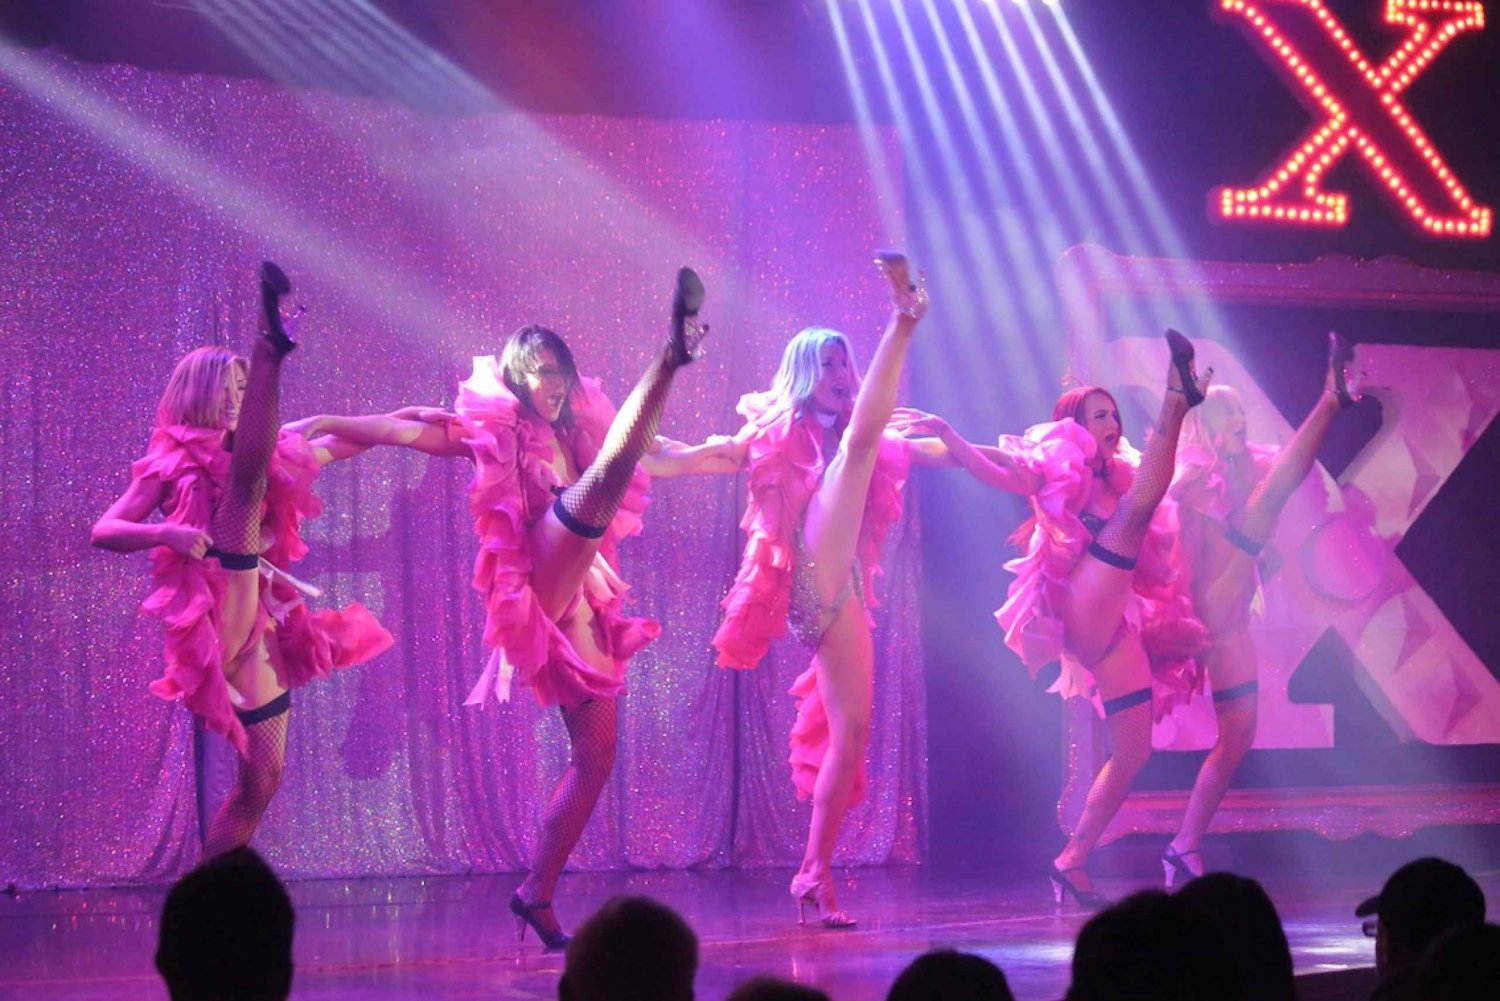 Las Vegas: X Espectáculo de Burlesque en el Flamingo